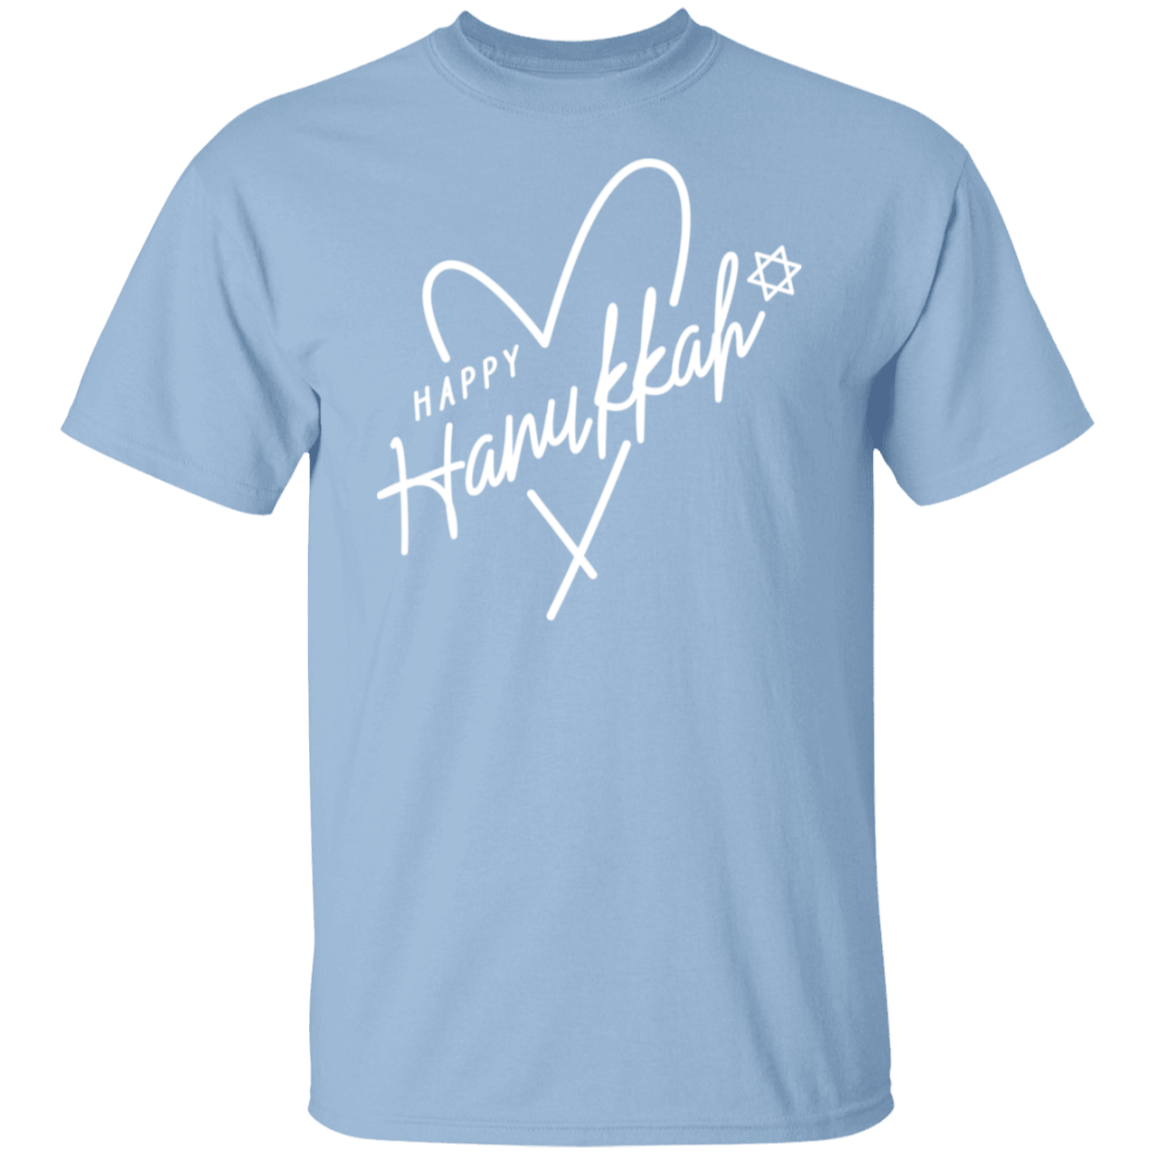 Hanukkah White Heart T-Shirt